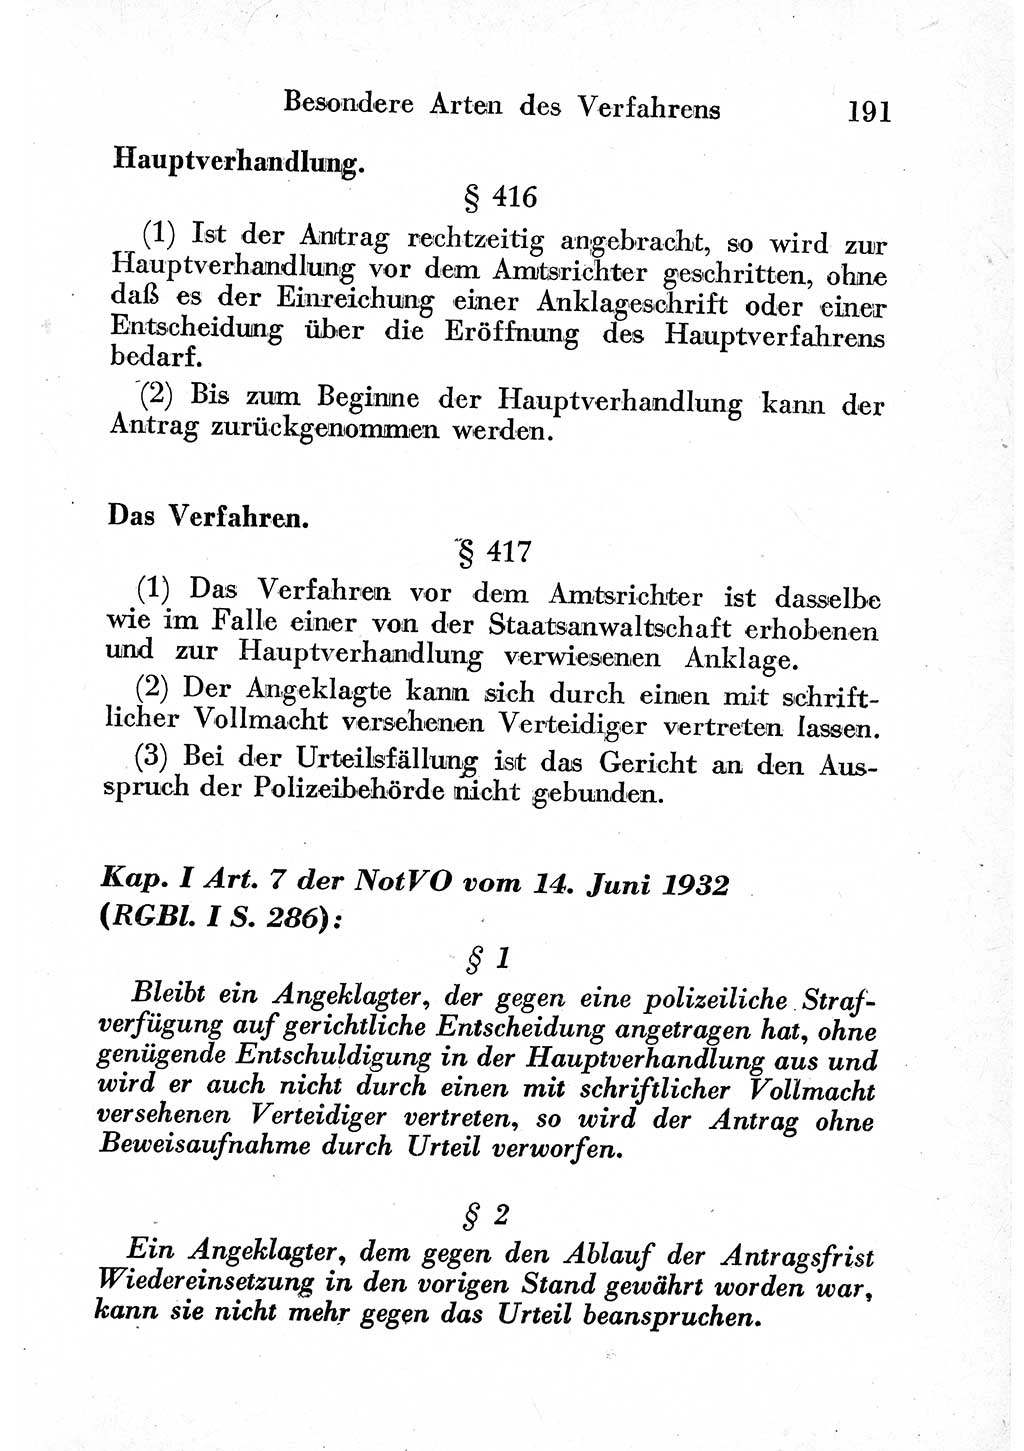 Strafprozeßordnung (StPO), Gerichtsverfassungsgesetz (GVG) und zahlreiche Nebengesetze der sowjetischen Besatzungszone (SBZ) in Deutschland 1949, Seite 191 (StPO GVG Ges. SBZ Dtl. 1949, S. 191)